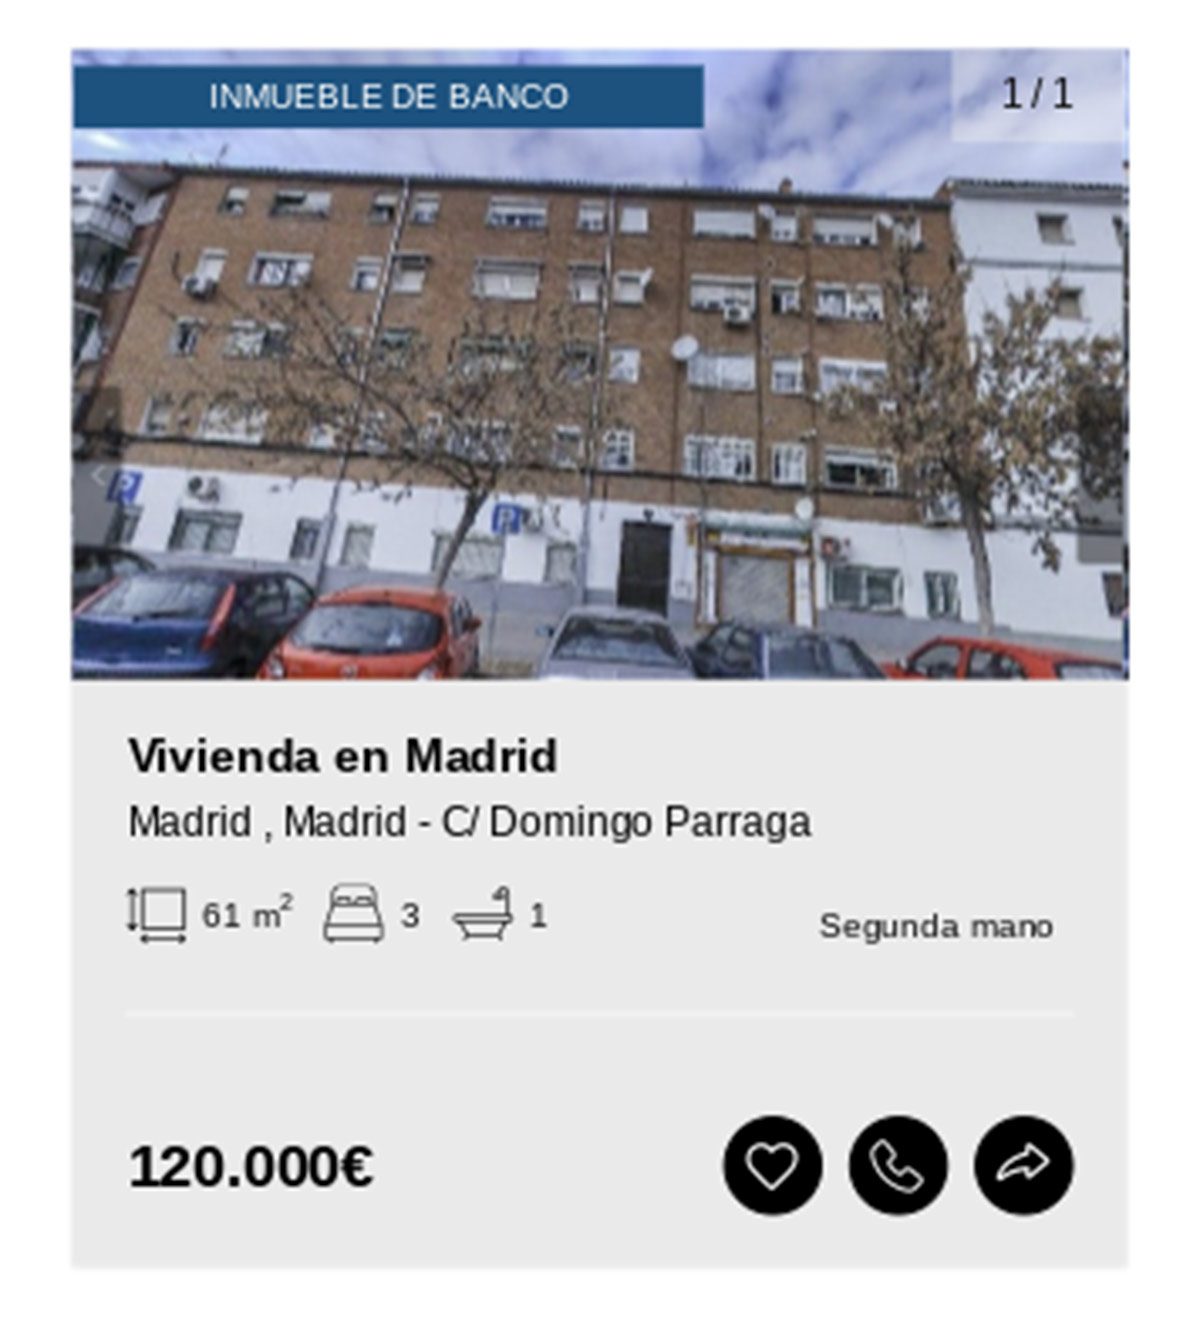 Piso en Madrid de Solvia por 120.000 euros